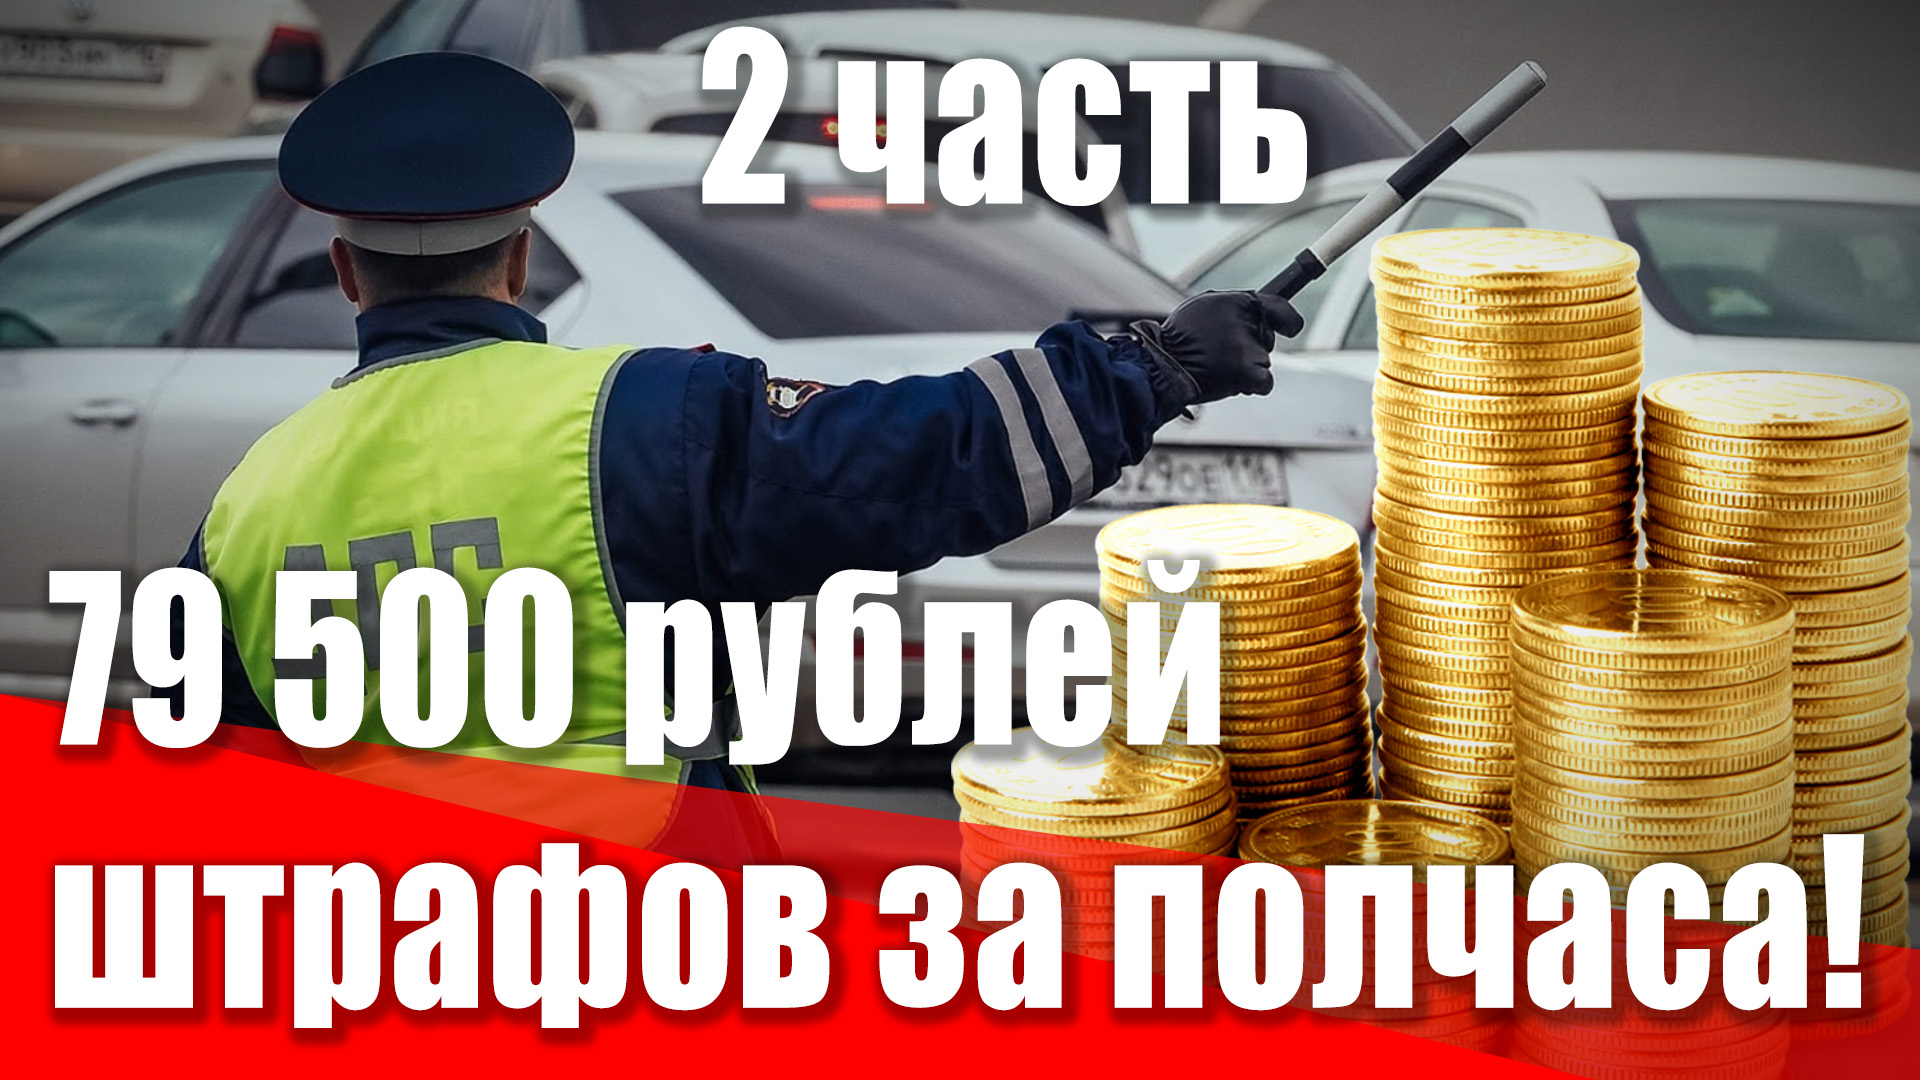 79 500 рублей штрафа за полчаса дороги! Как водят в Петербурге и как надо наказывать. 
2 часть.